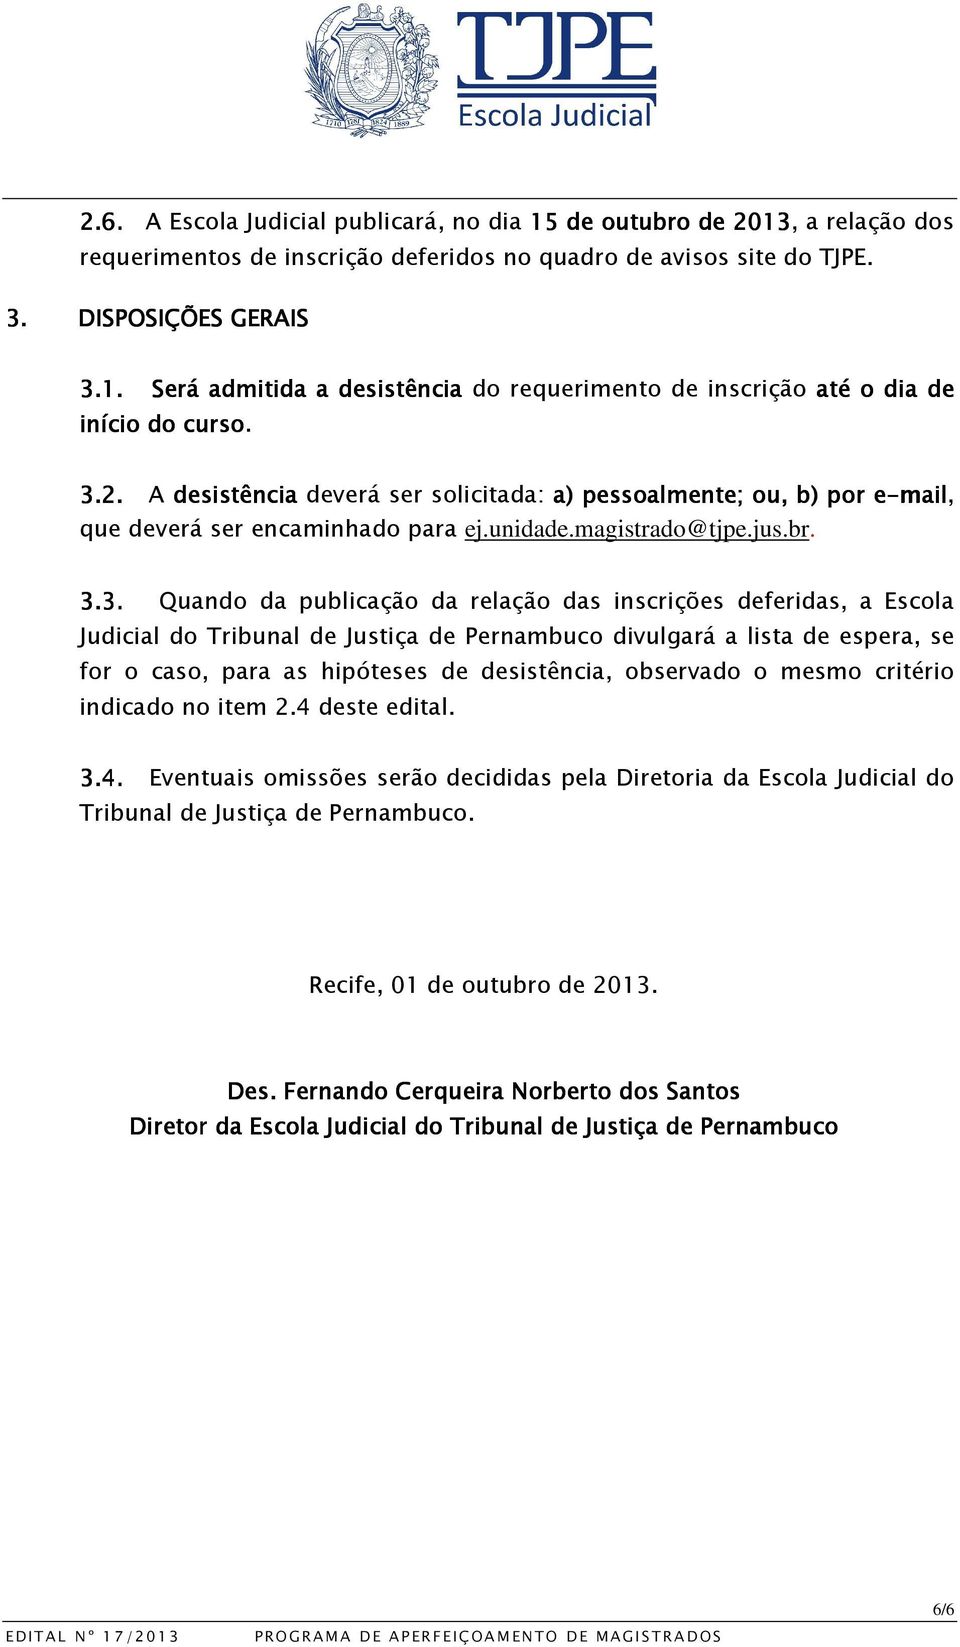 inscrições deferidas, a Escola Judicial do Tribunal de Justiça de Pernambuco divulgará a lista de espera, se for o caso, para as hipóteses de desistência, observado o mesmo critério indicado no item